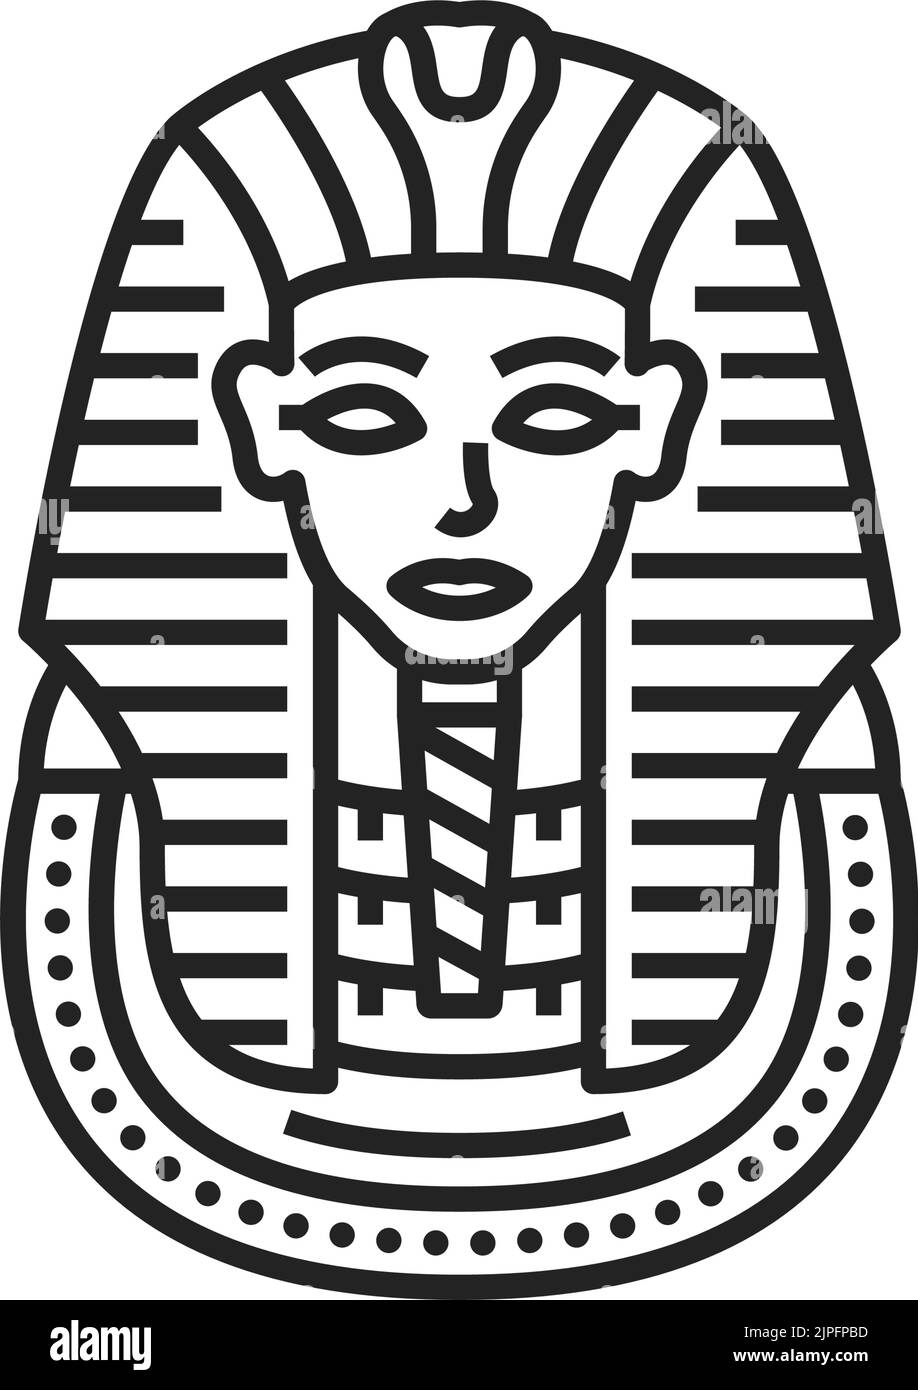 Máscara egipcia Imágenes de stock en blanco y negro - Alamy